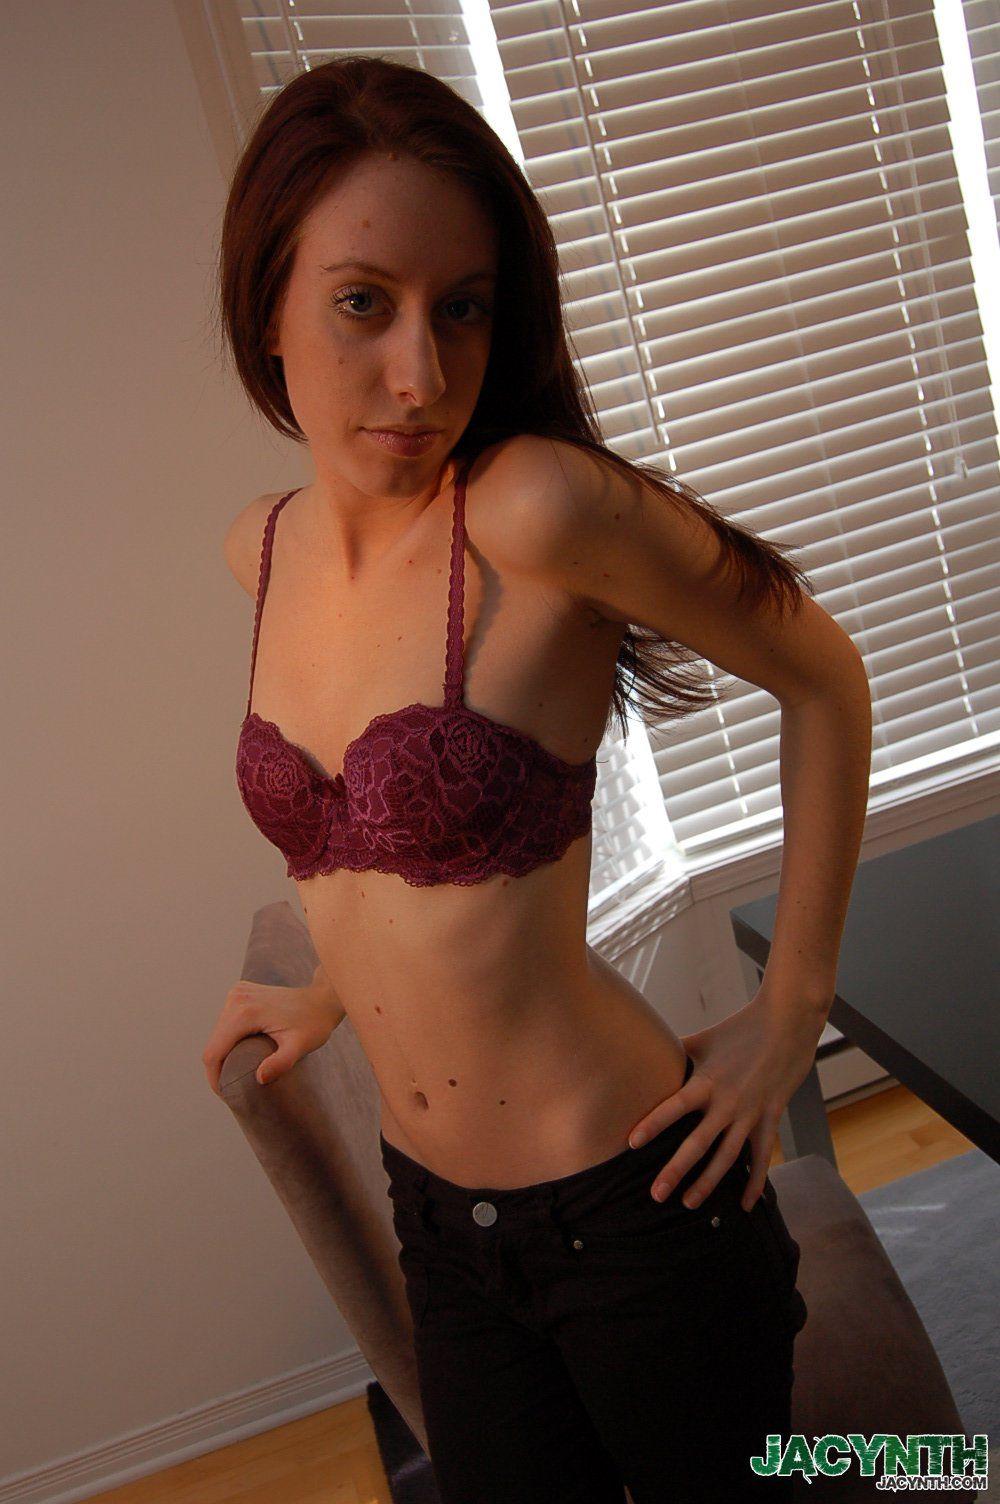 Immagini di jacynth ragazza giovane ostentando il suo corpo sexy
 #55032623